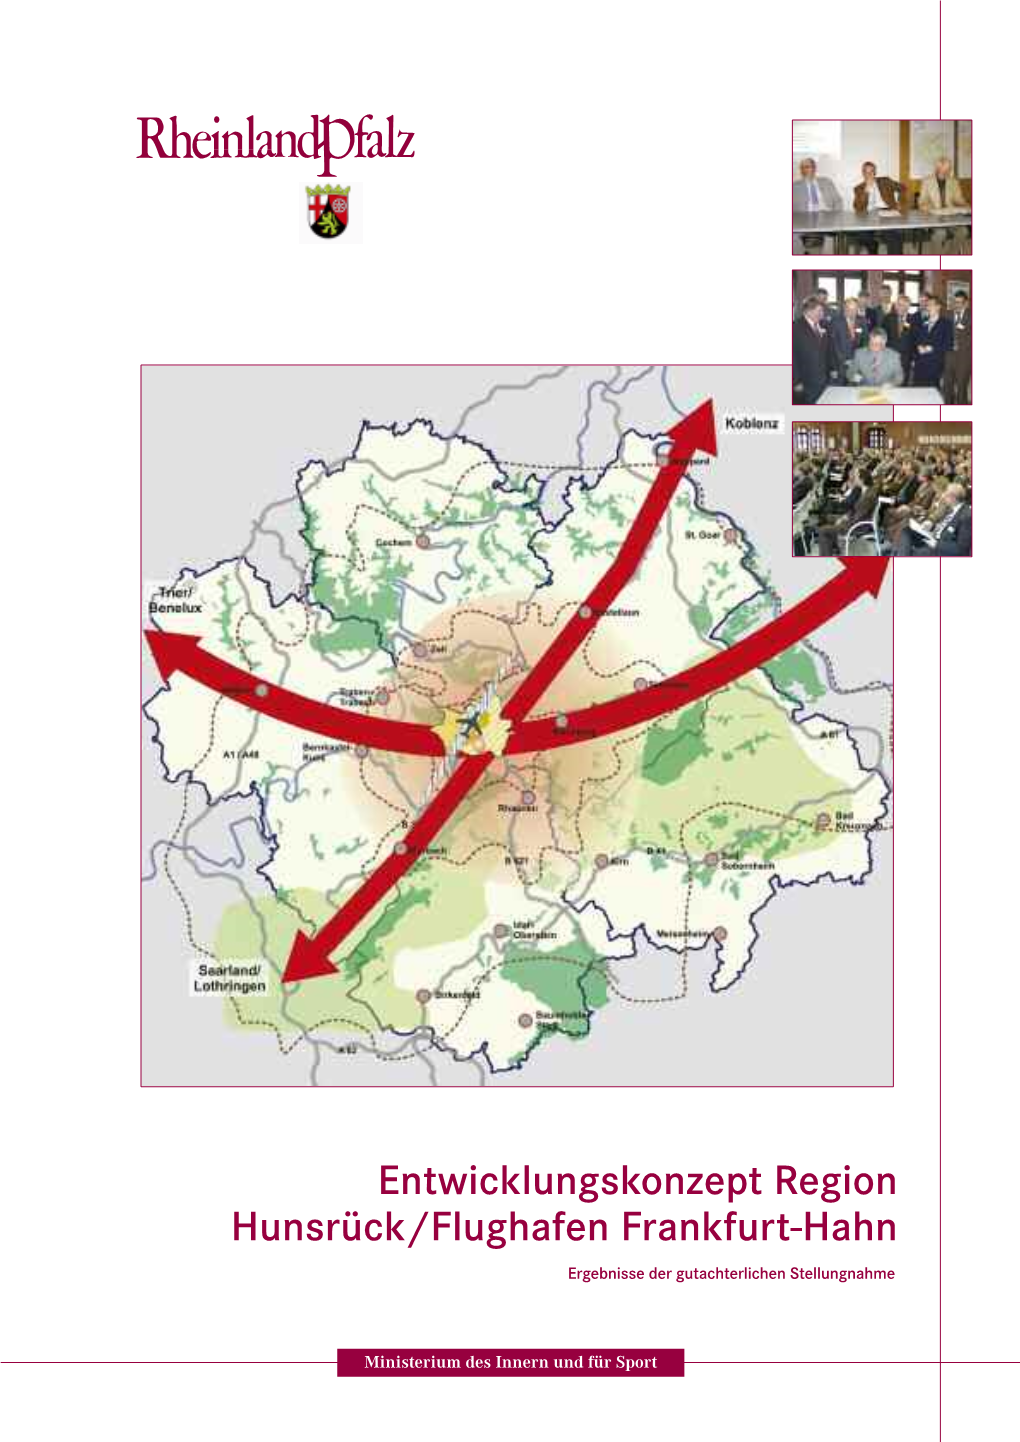 Entwicklungskonzept Region Hunsrück/Flughafen Frankfurt-Hahn